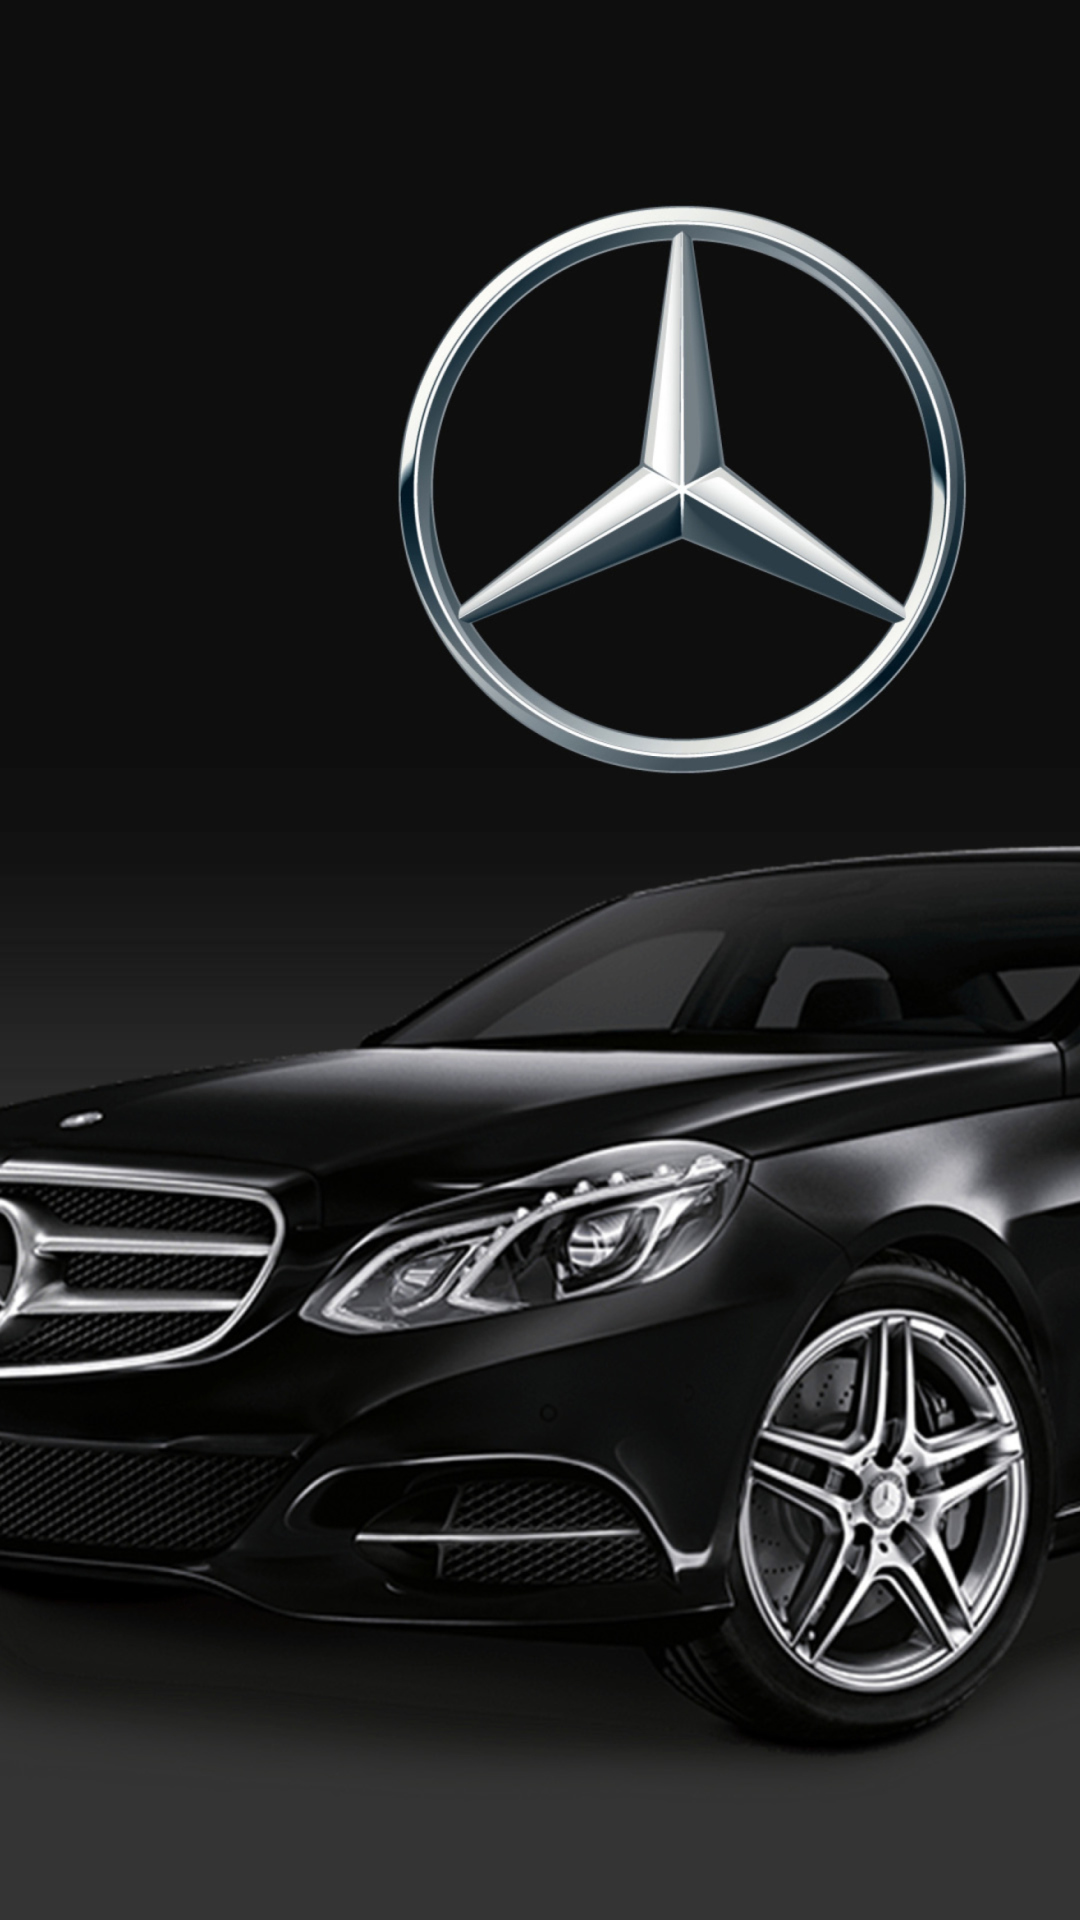 Mercedes S-Class wallpaper 1080x1920